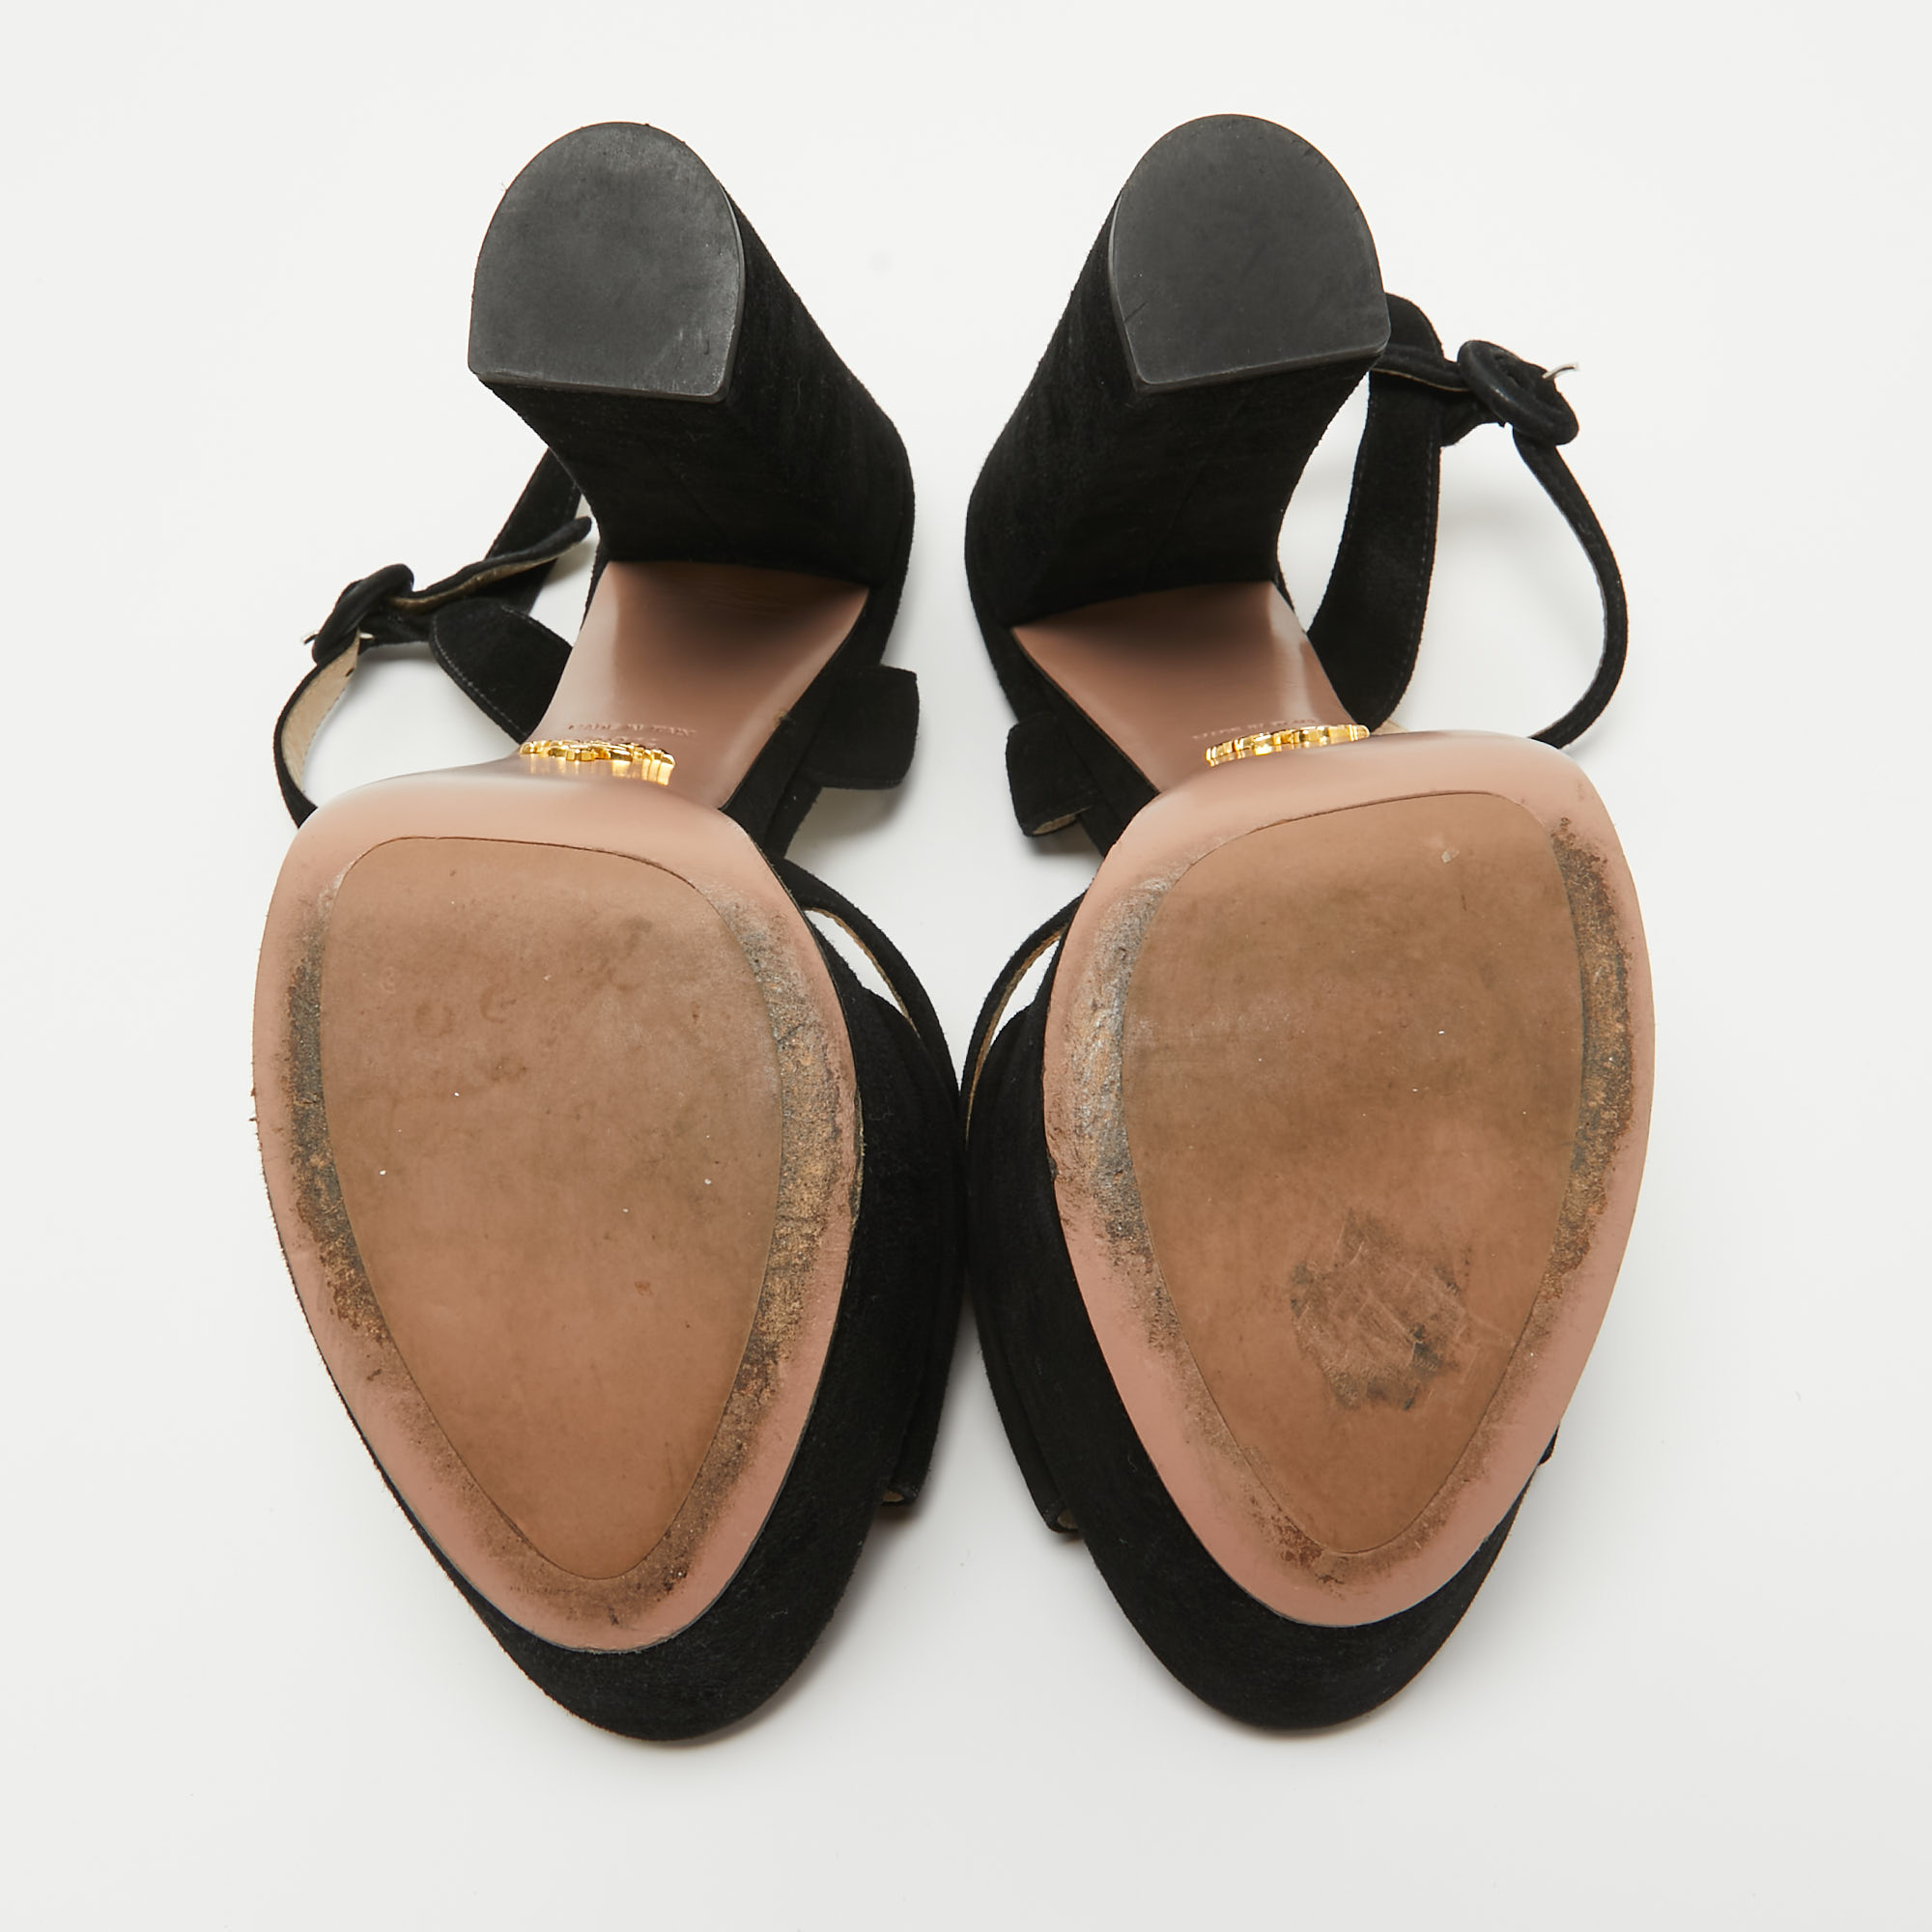 Prada Black Suede Platform Ankle Strap Sandals Size 39.5